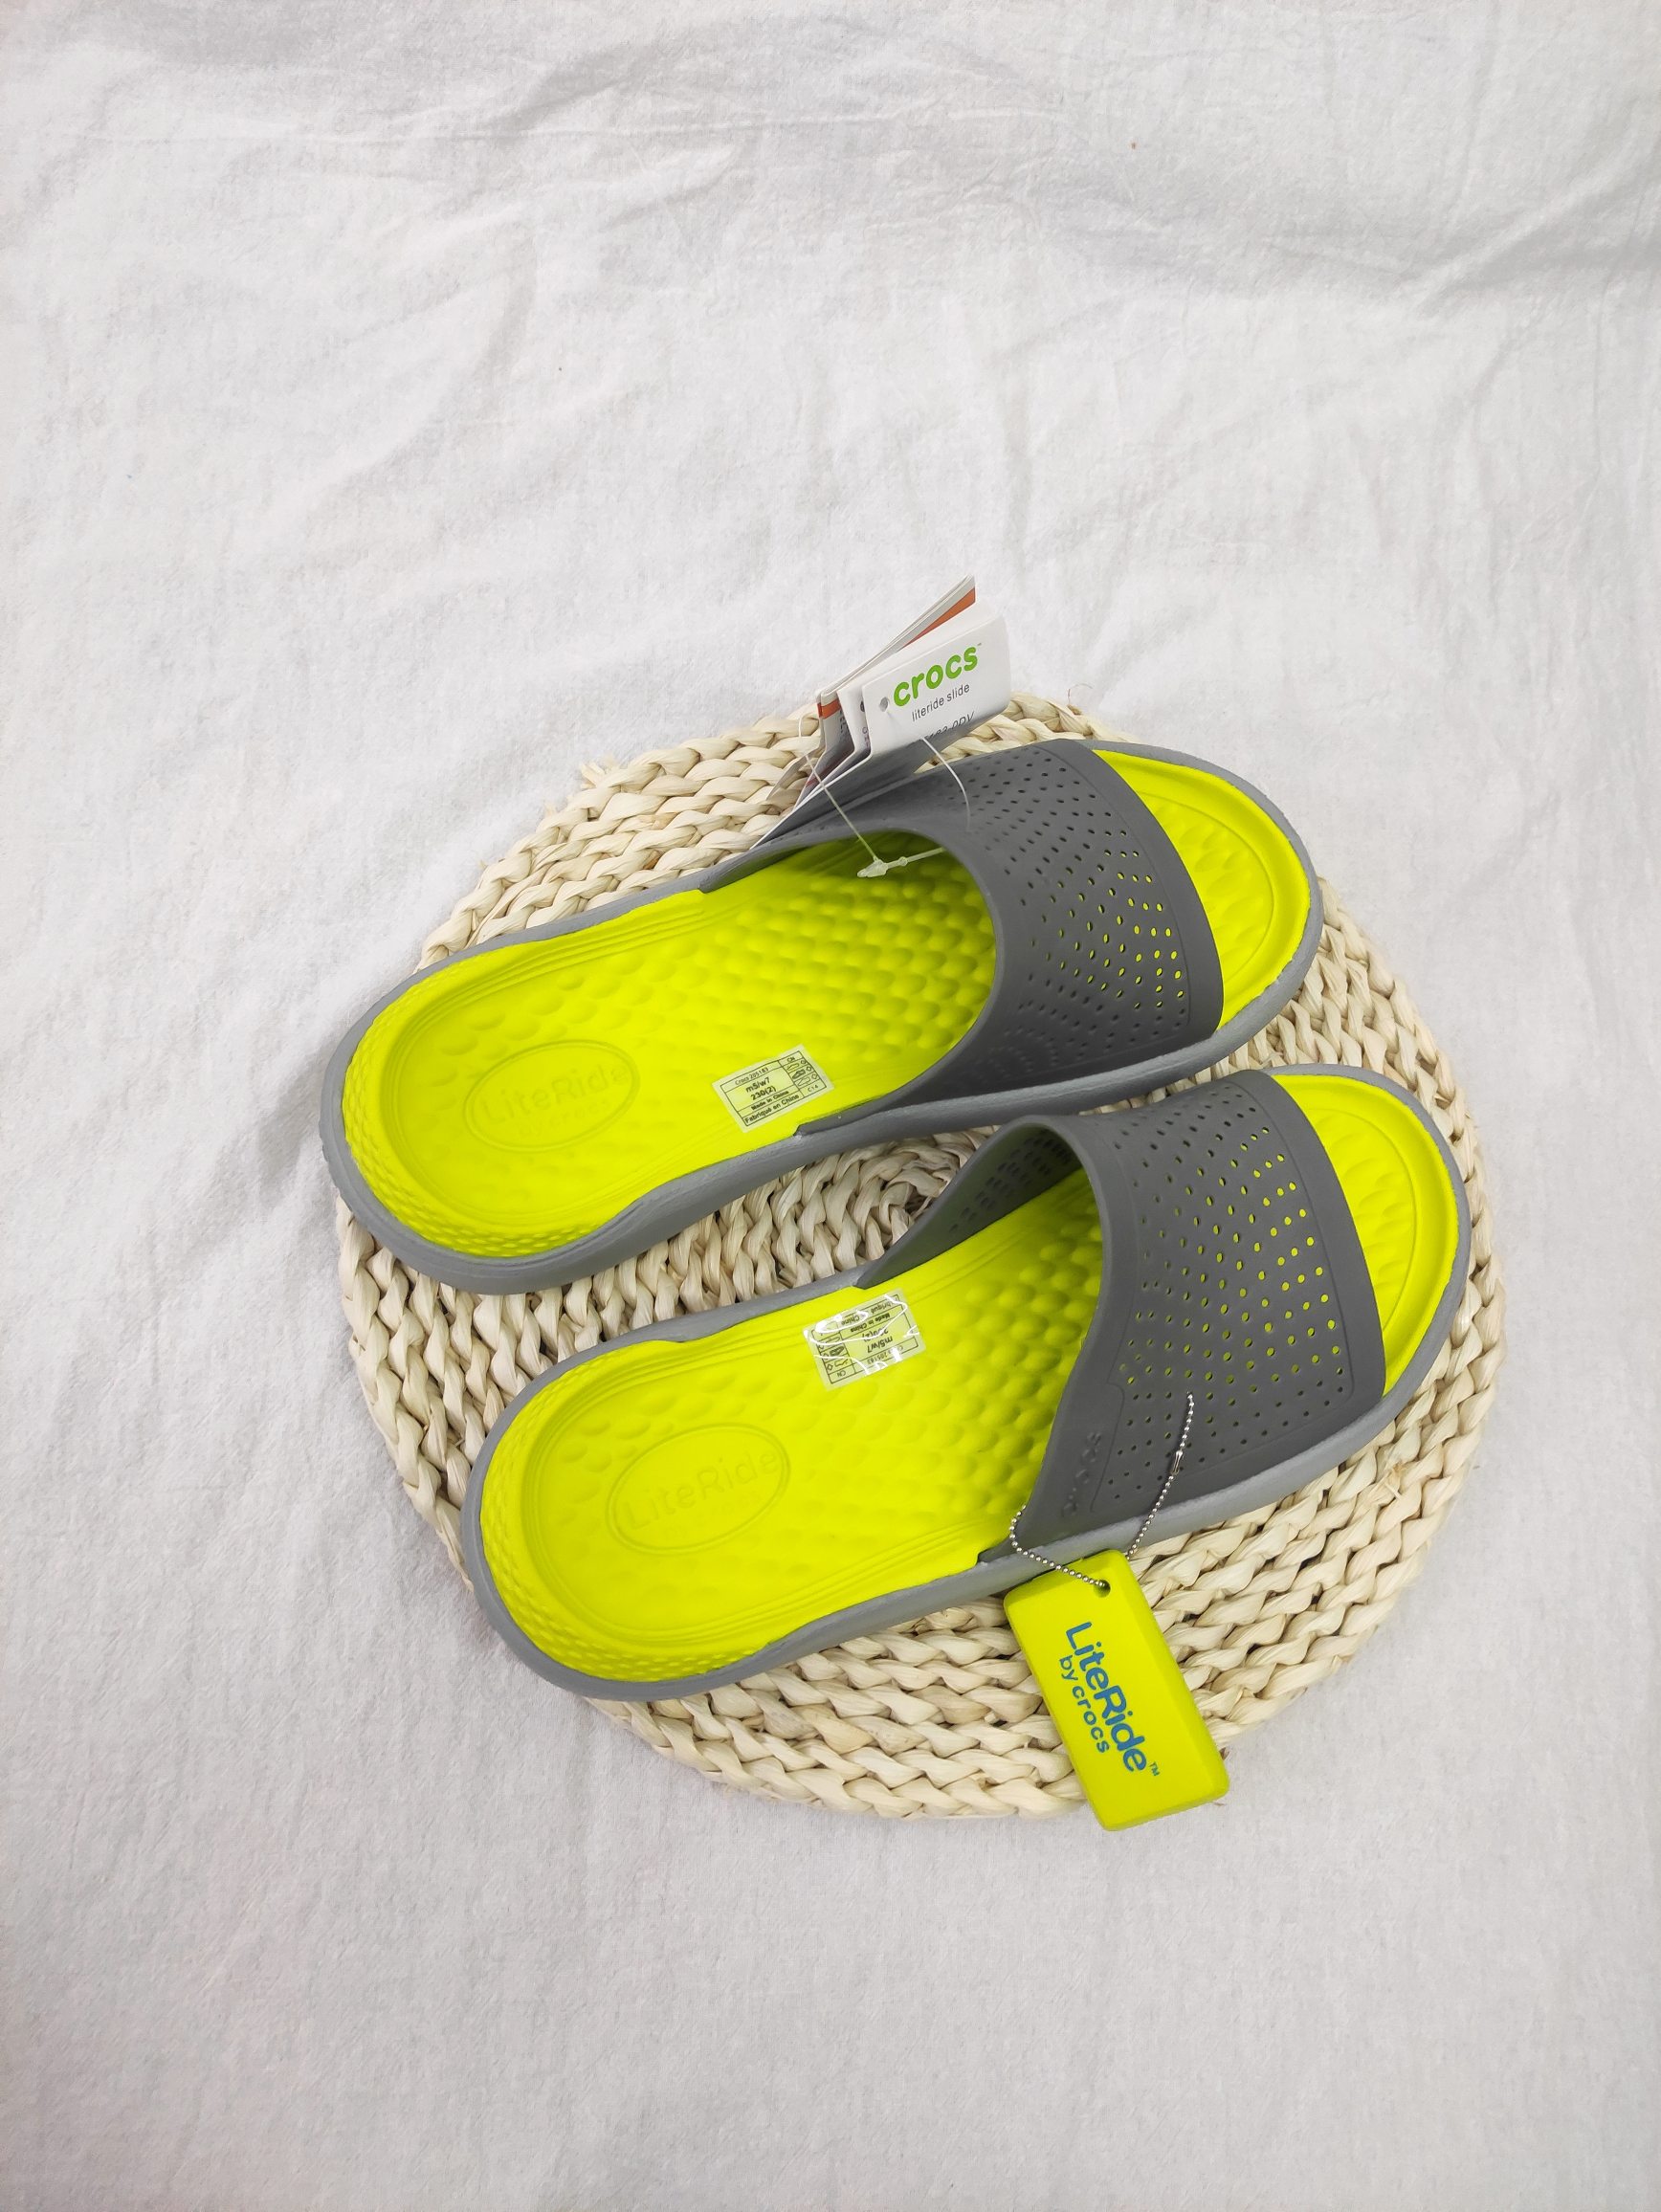 SAYYAS Men's and Women's LiteRide Slide Sandals Yellow